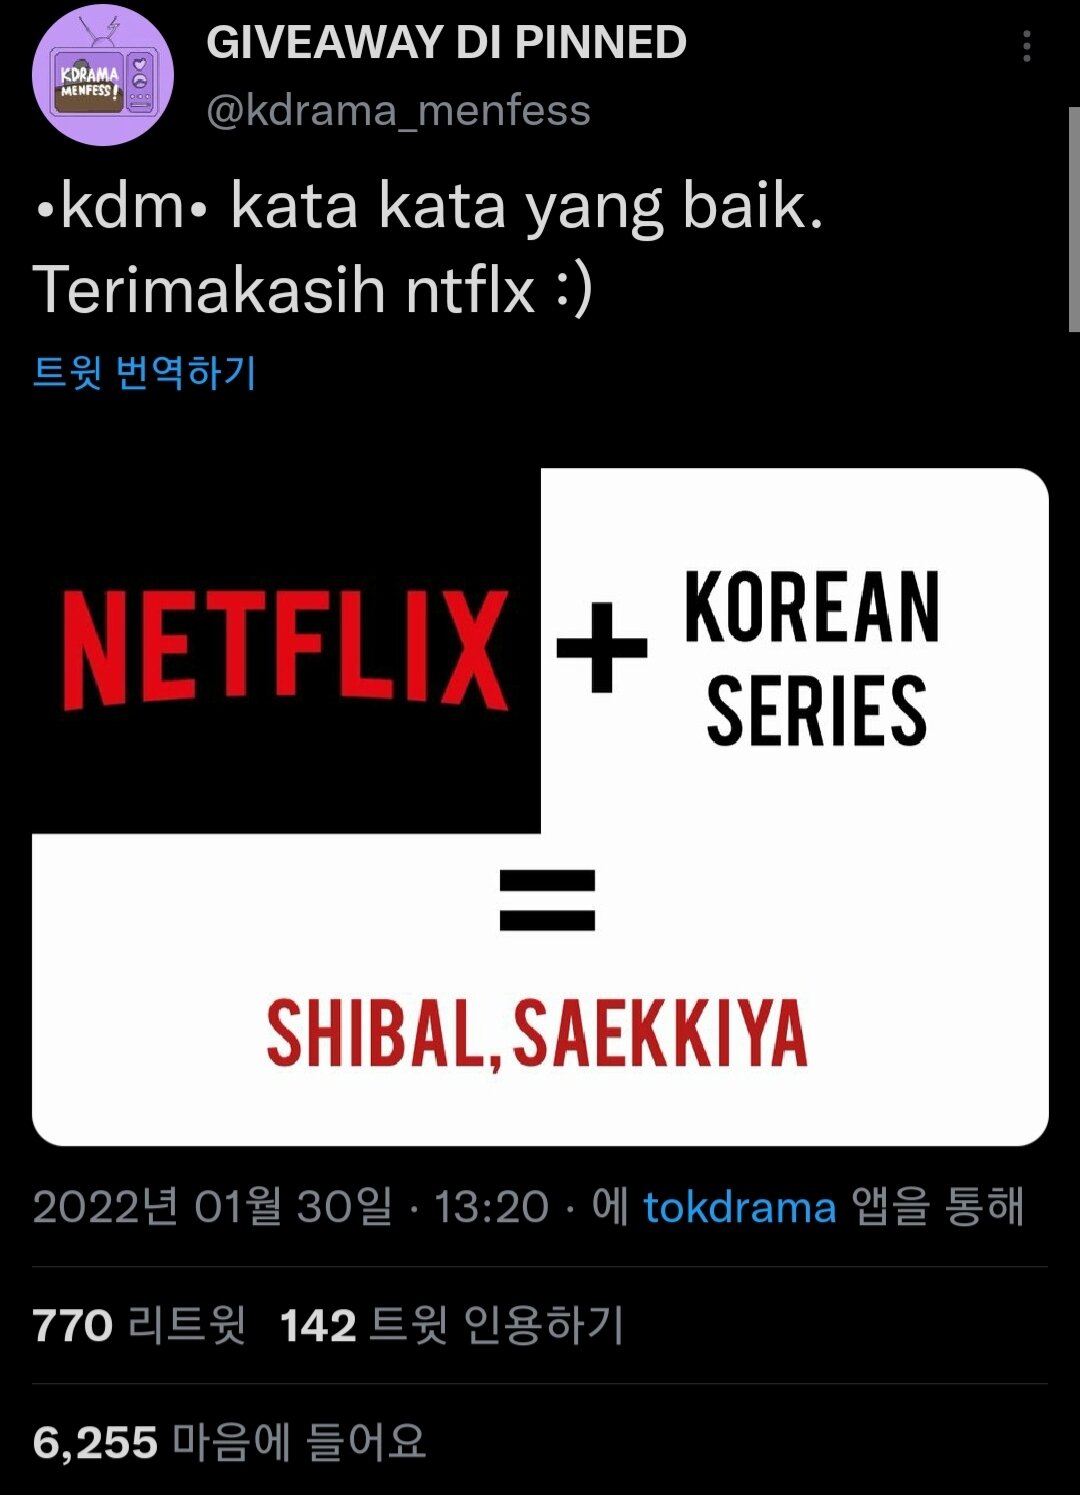 넷플릭스와 K-드라마의 공식